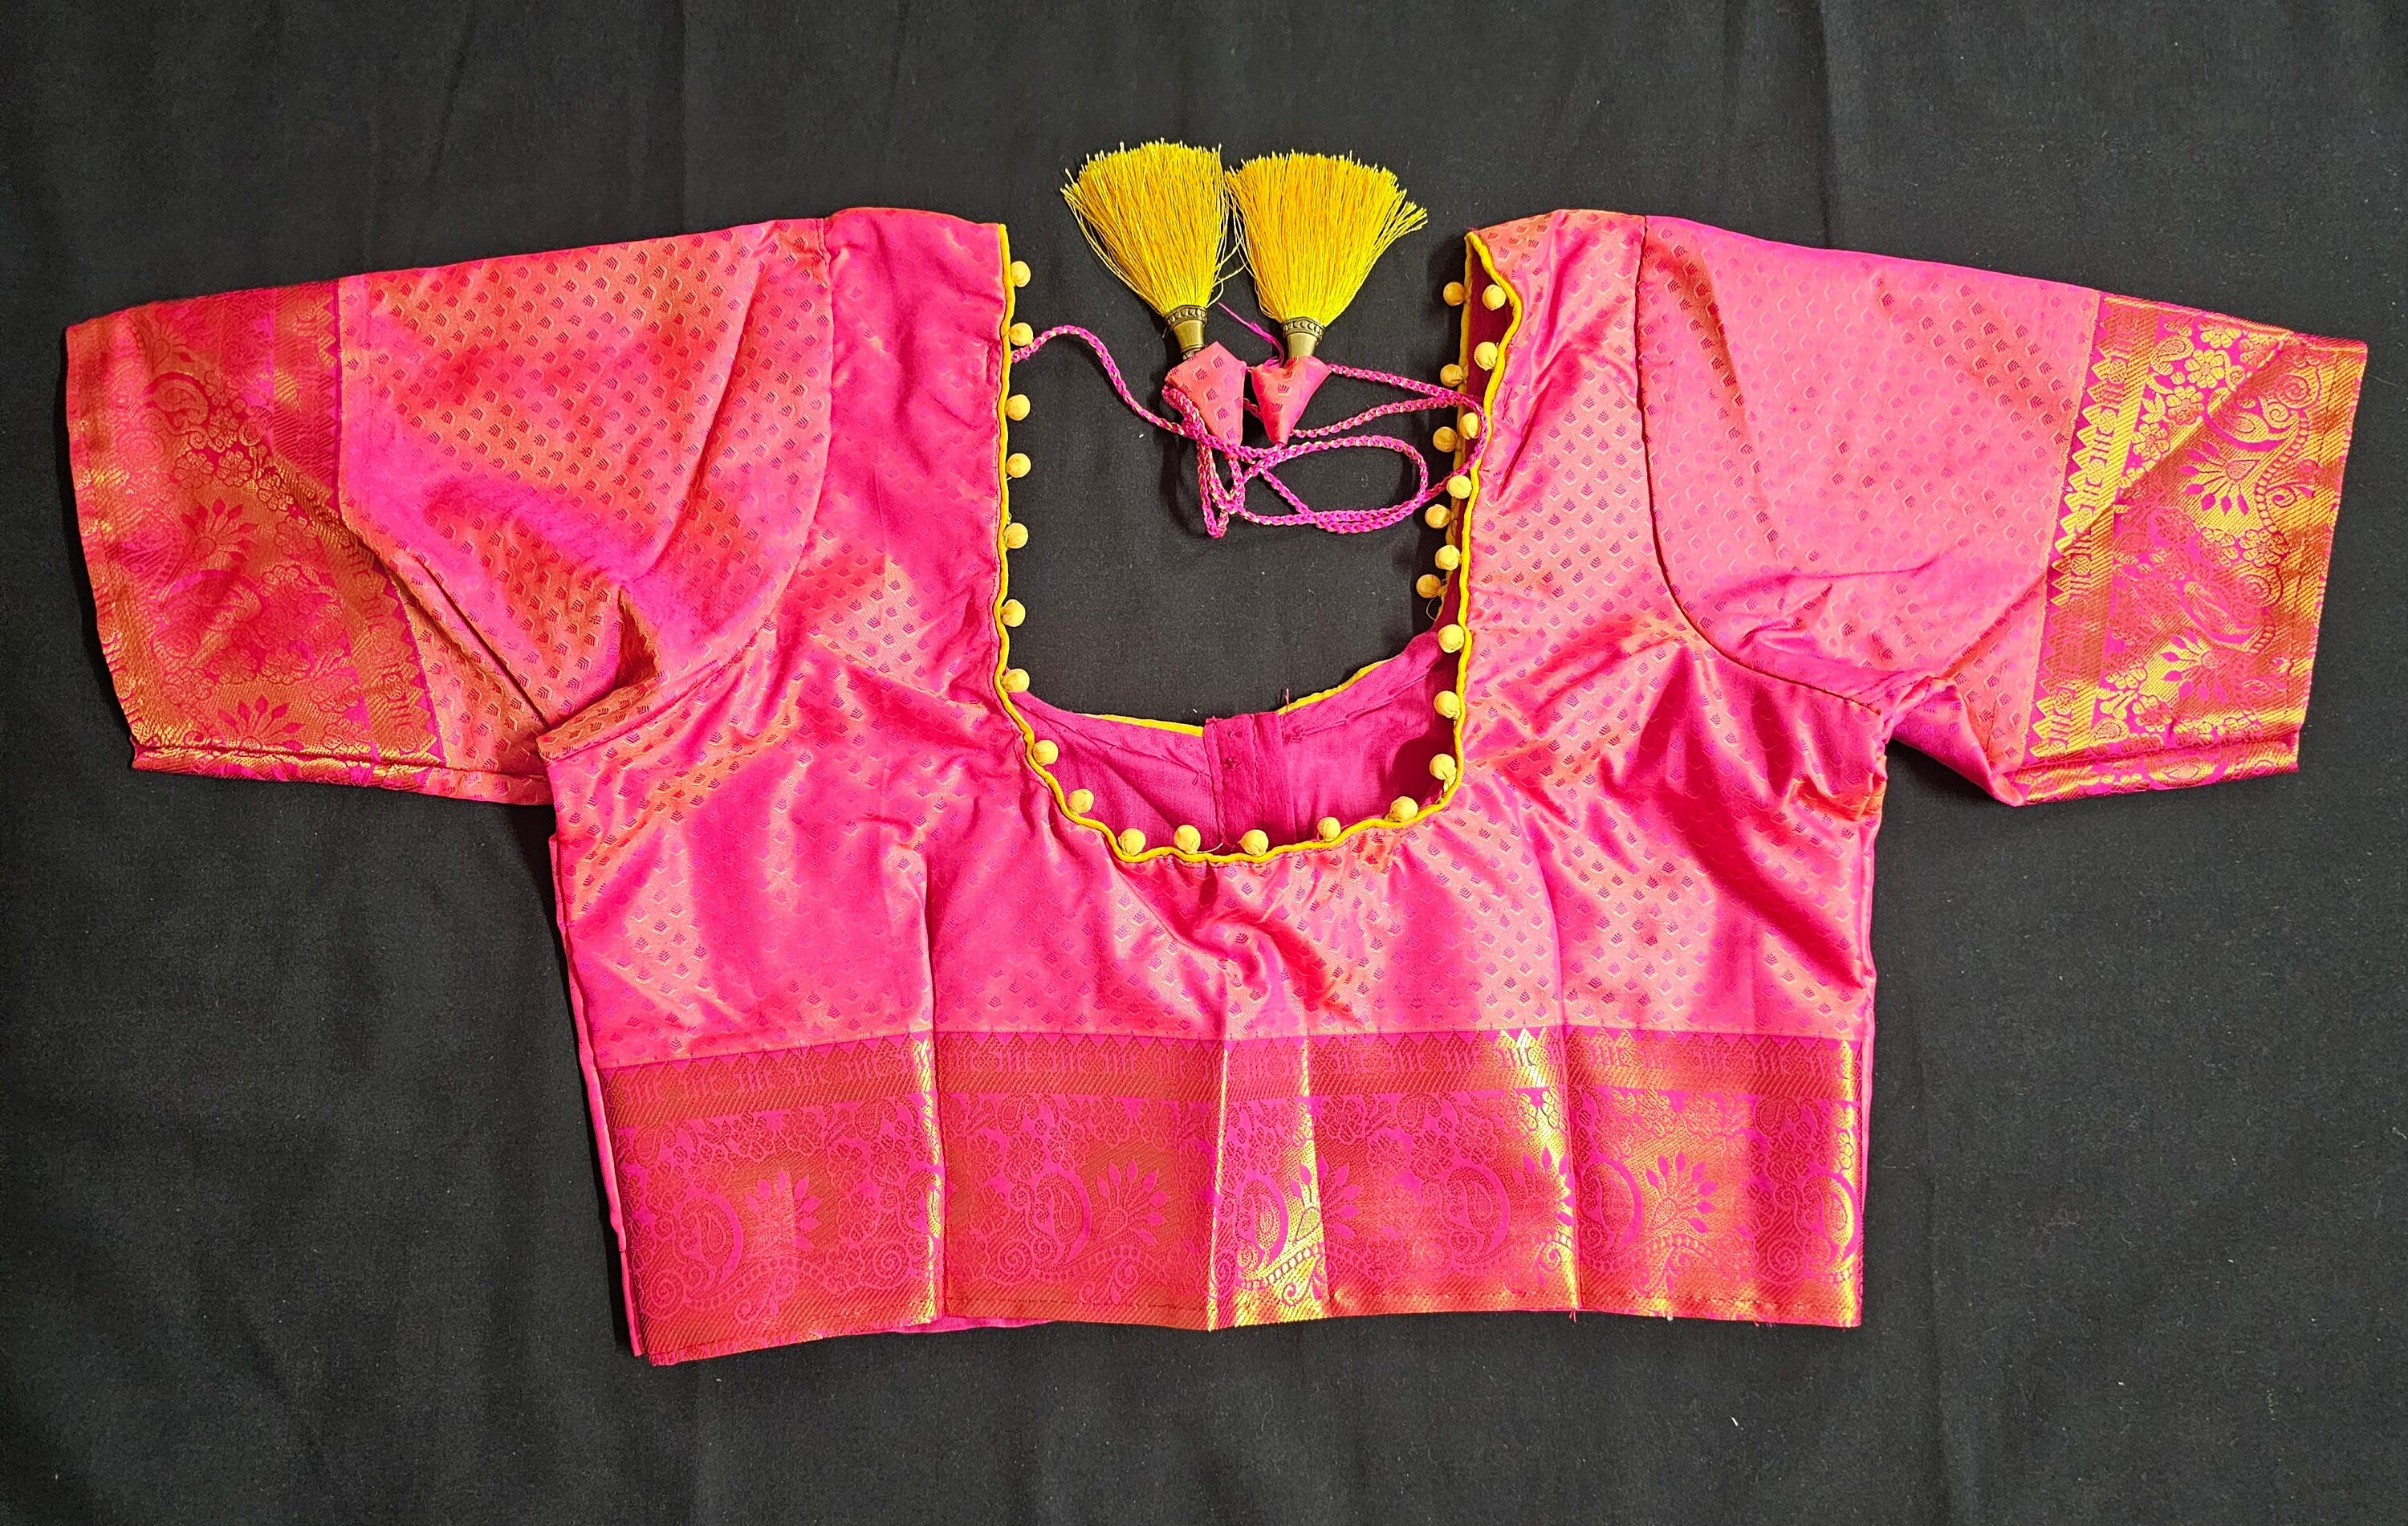 Bridal wear - Traditional wedding Saree - Brocade Saree -Kanchipuram pattern rich zari pallu with stitched blouse - Blouse size 34 (Upto 38)